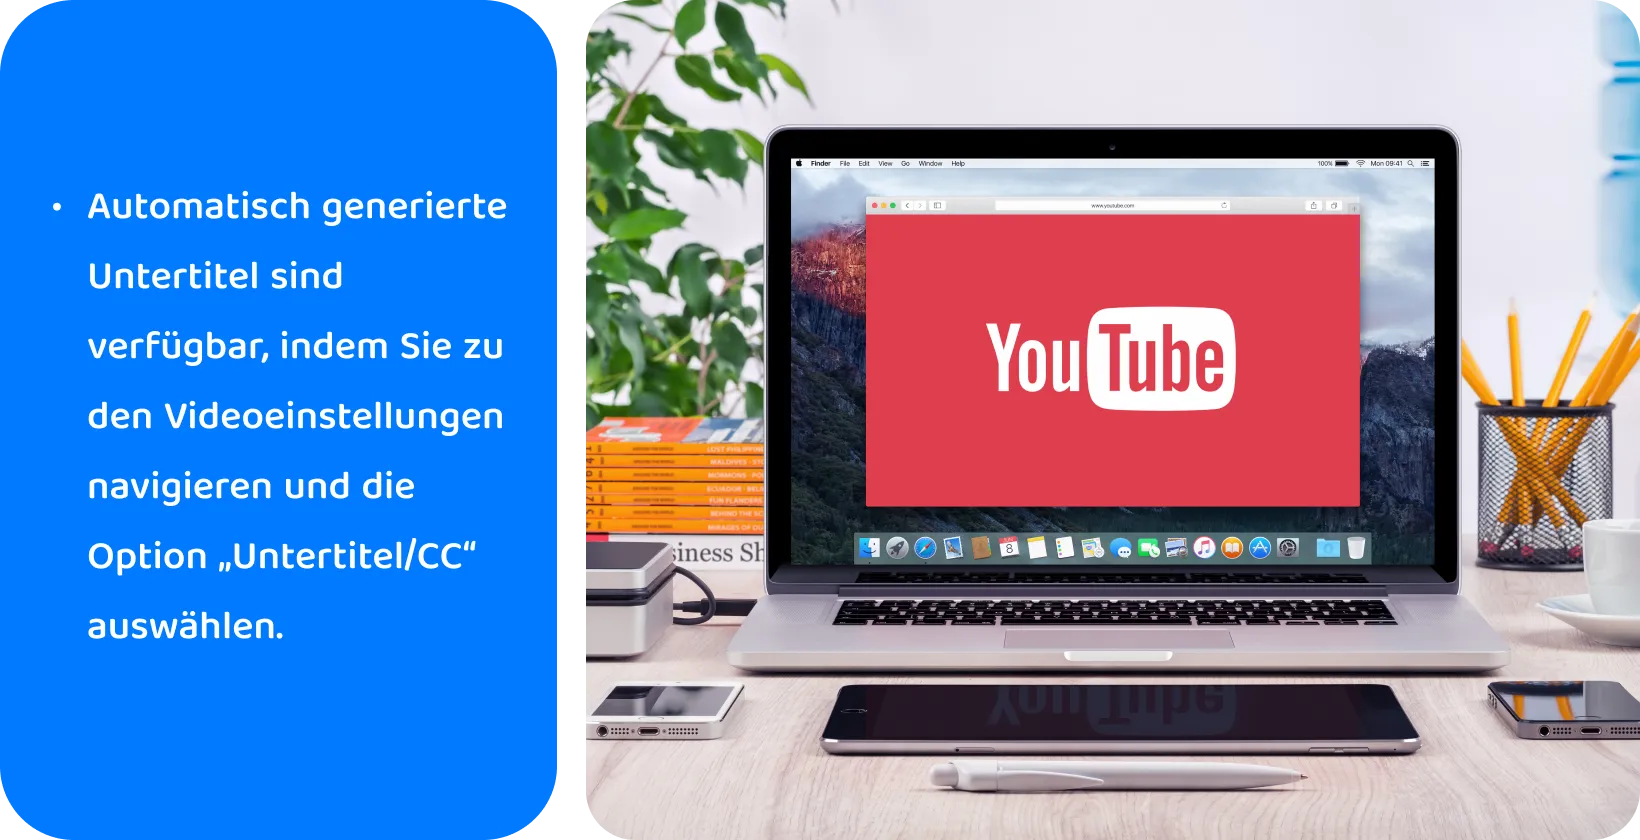 YouTube auf einem Laptop-Bildschirm, um die Verwendung von automatisch generierten Untertiteln für die Barrierefreiheit von Videos und SEO zu fördern.